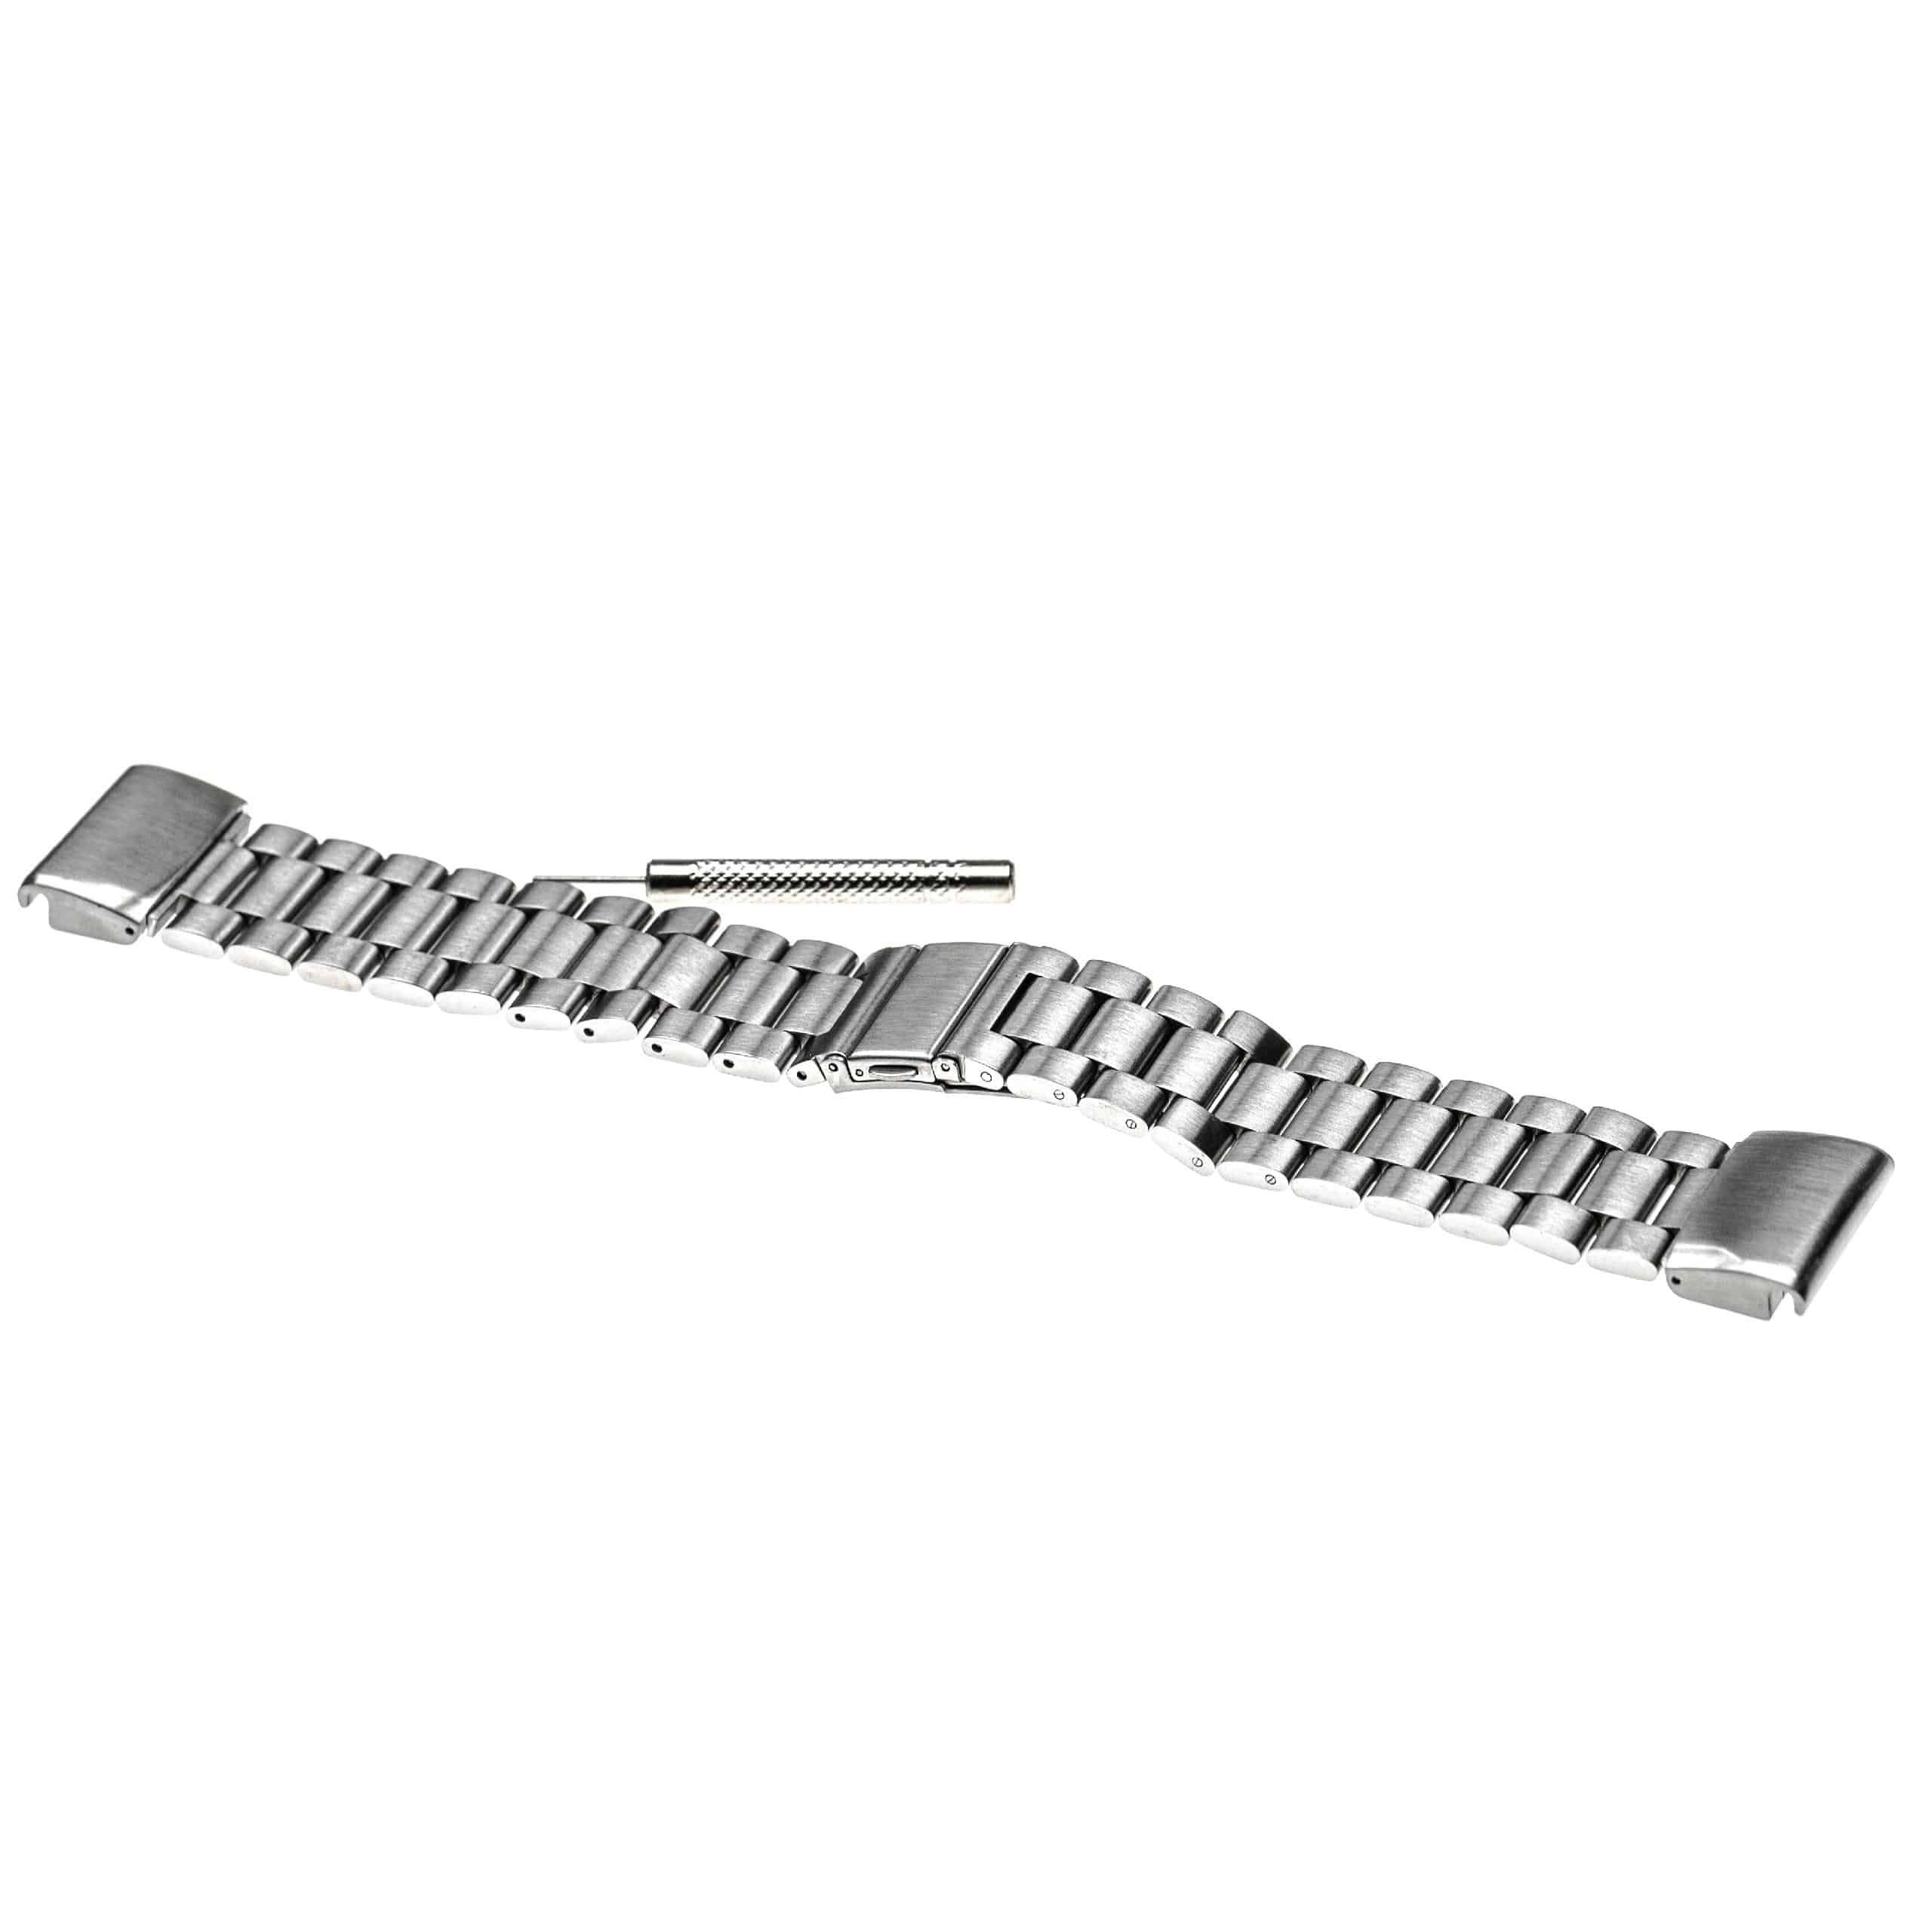 Armband für Garmin Fenix Smartwatch - 20,4 cm lang, 26mm breit, Edelstahl, silber